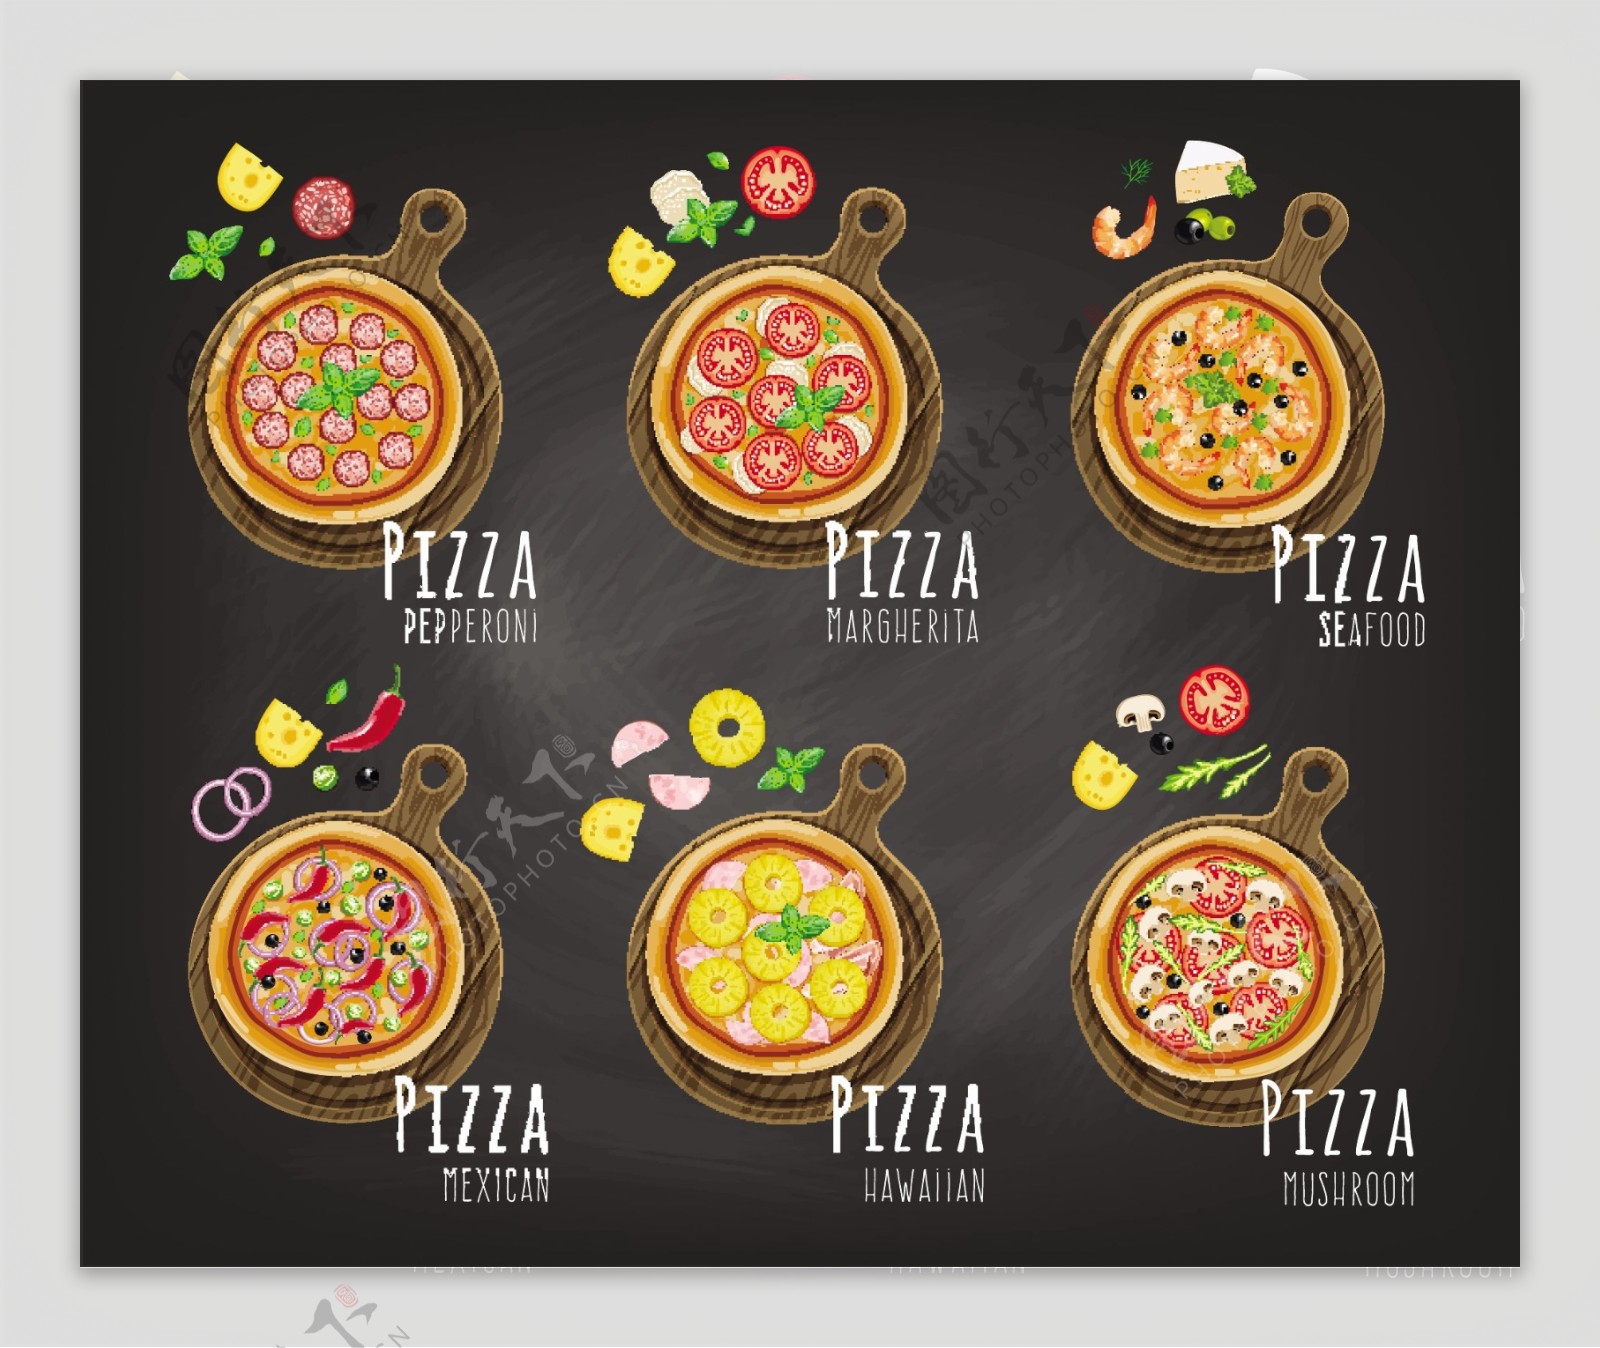 复古手绘披萨菜单模板